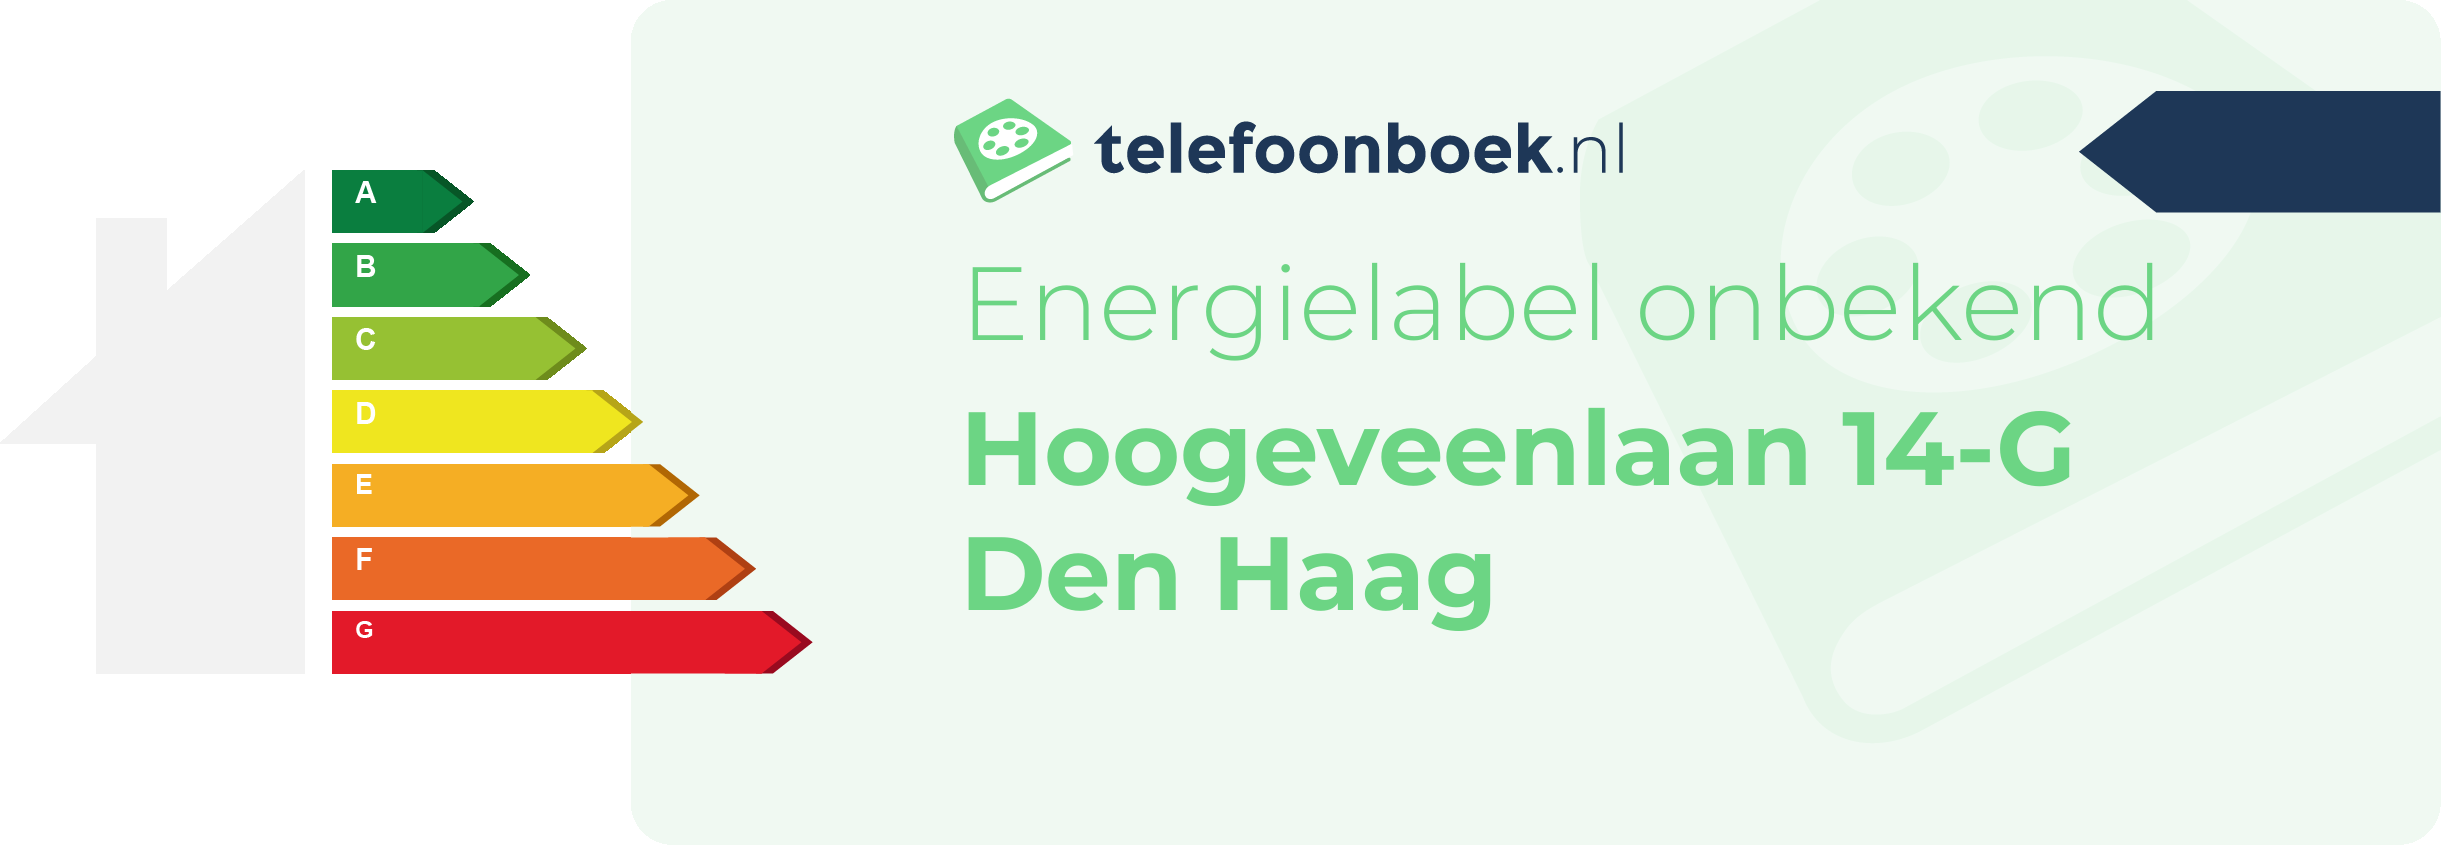 Energielabel Hoogeveenlaan 14-G Den Haag